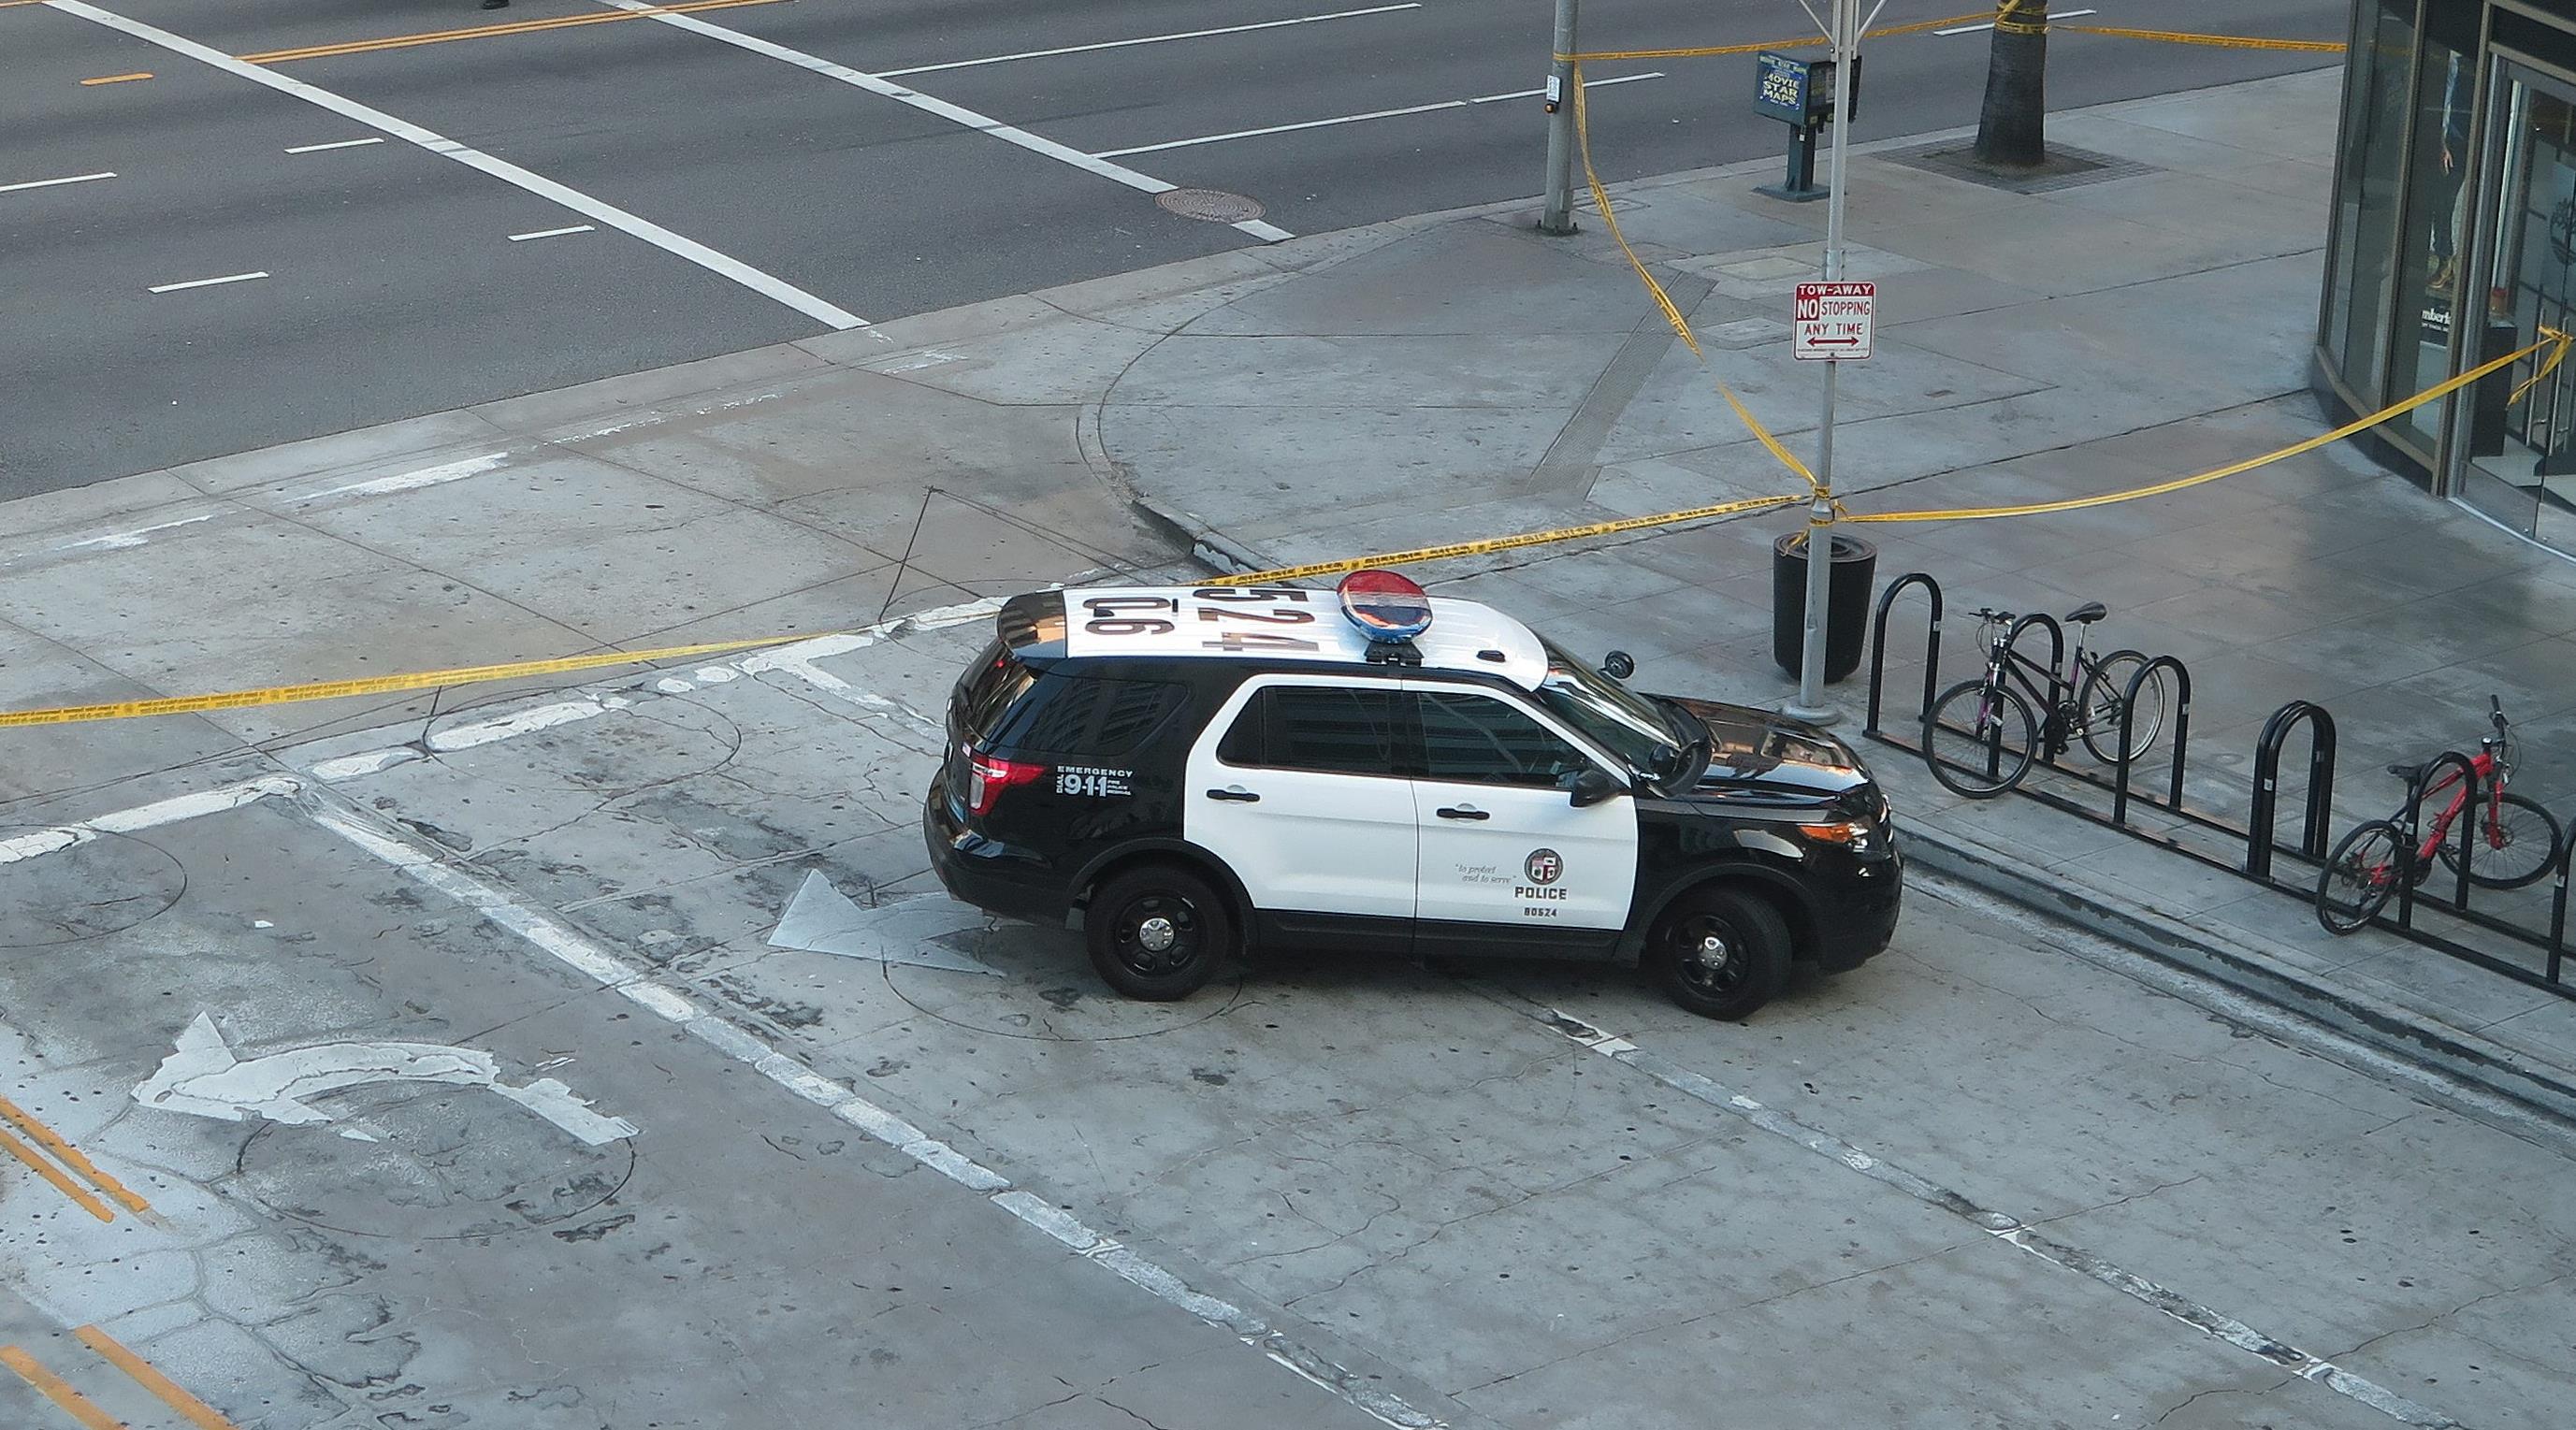 Σοκ: Αστυνομικοί σκοτώνουν άστεγο σε δρόμο του Λος Αντζελες